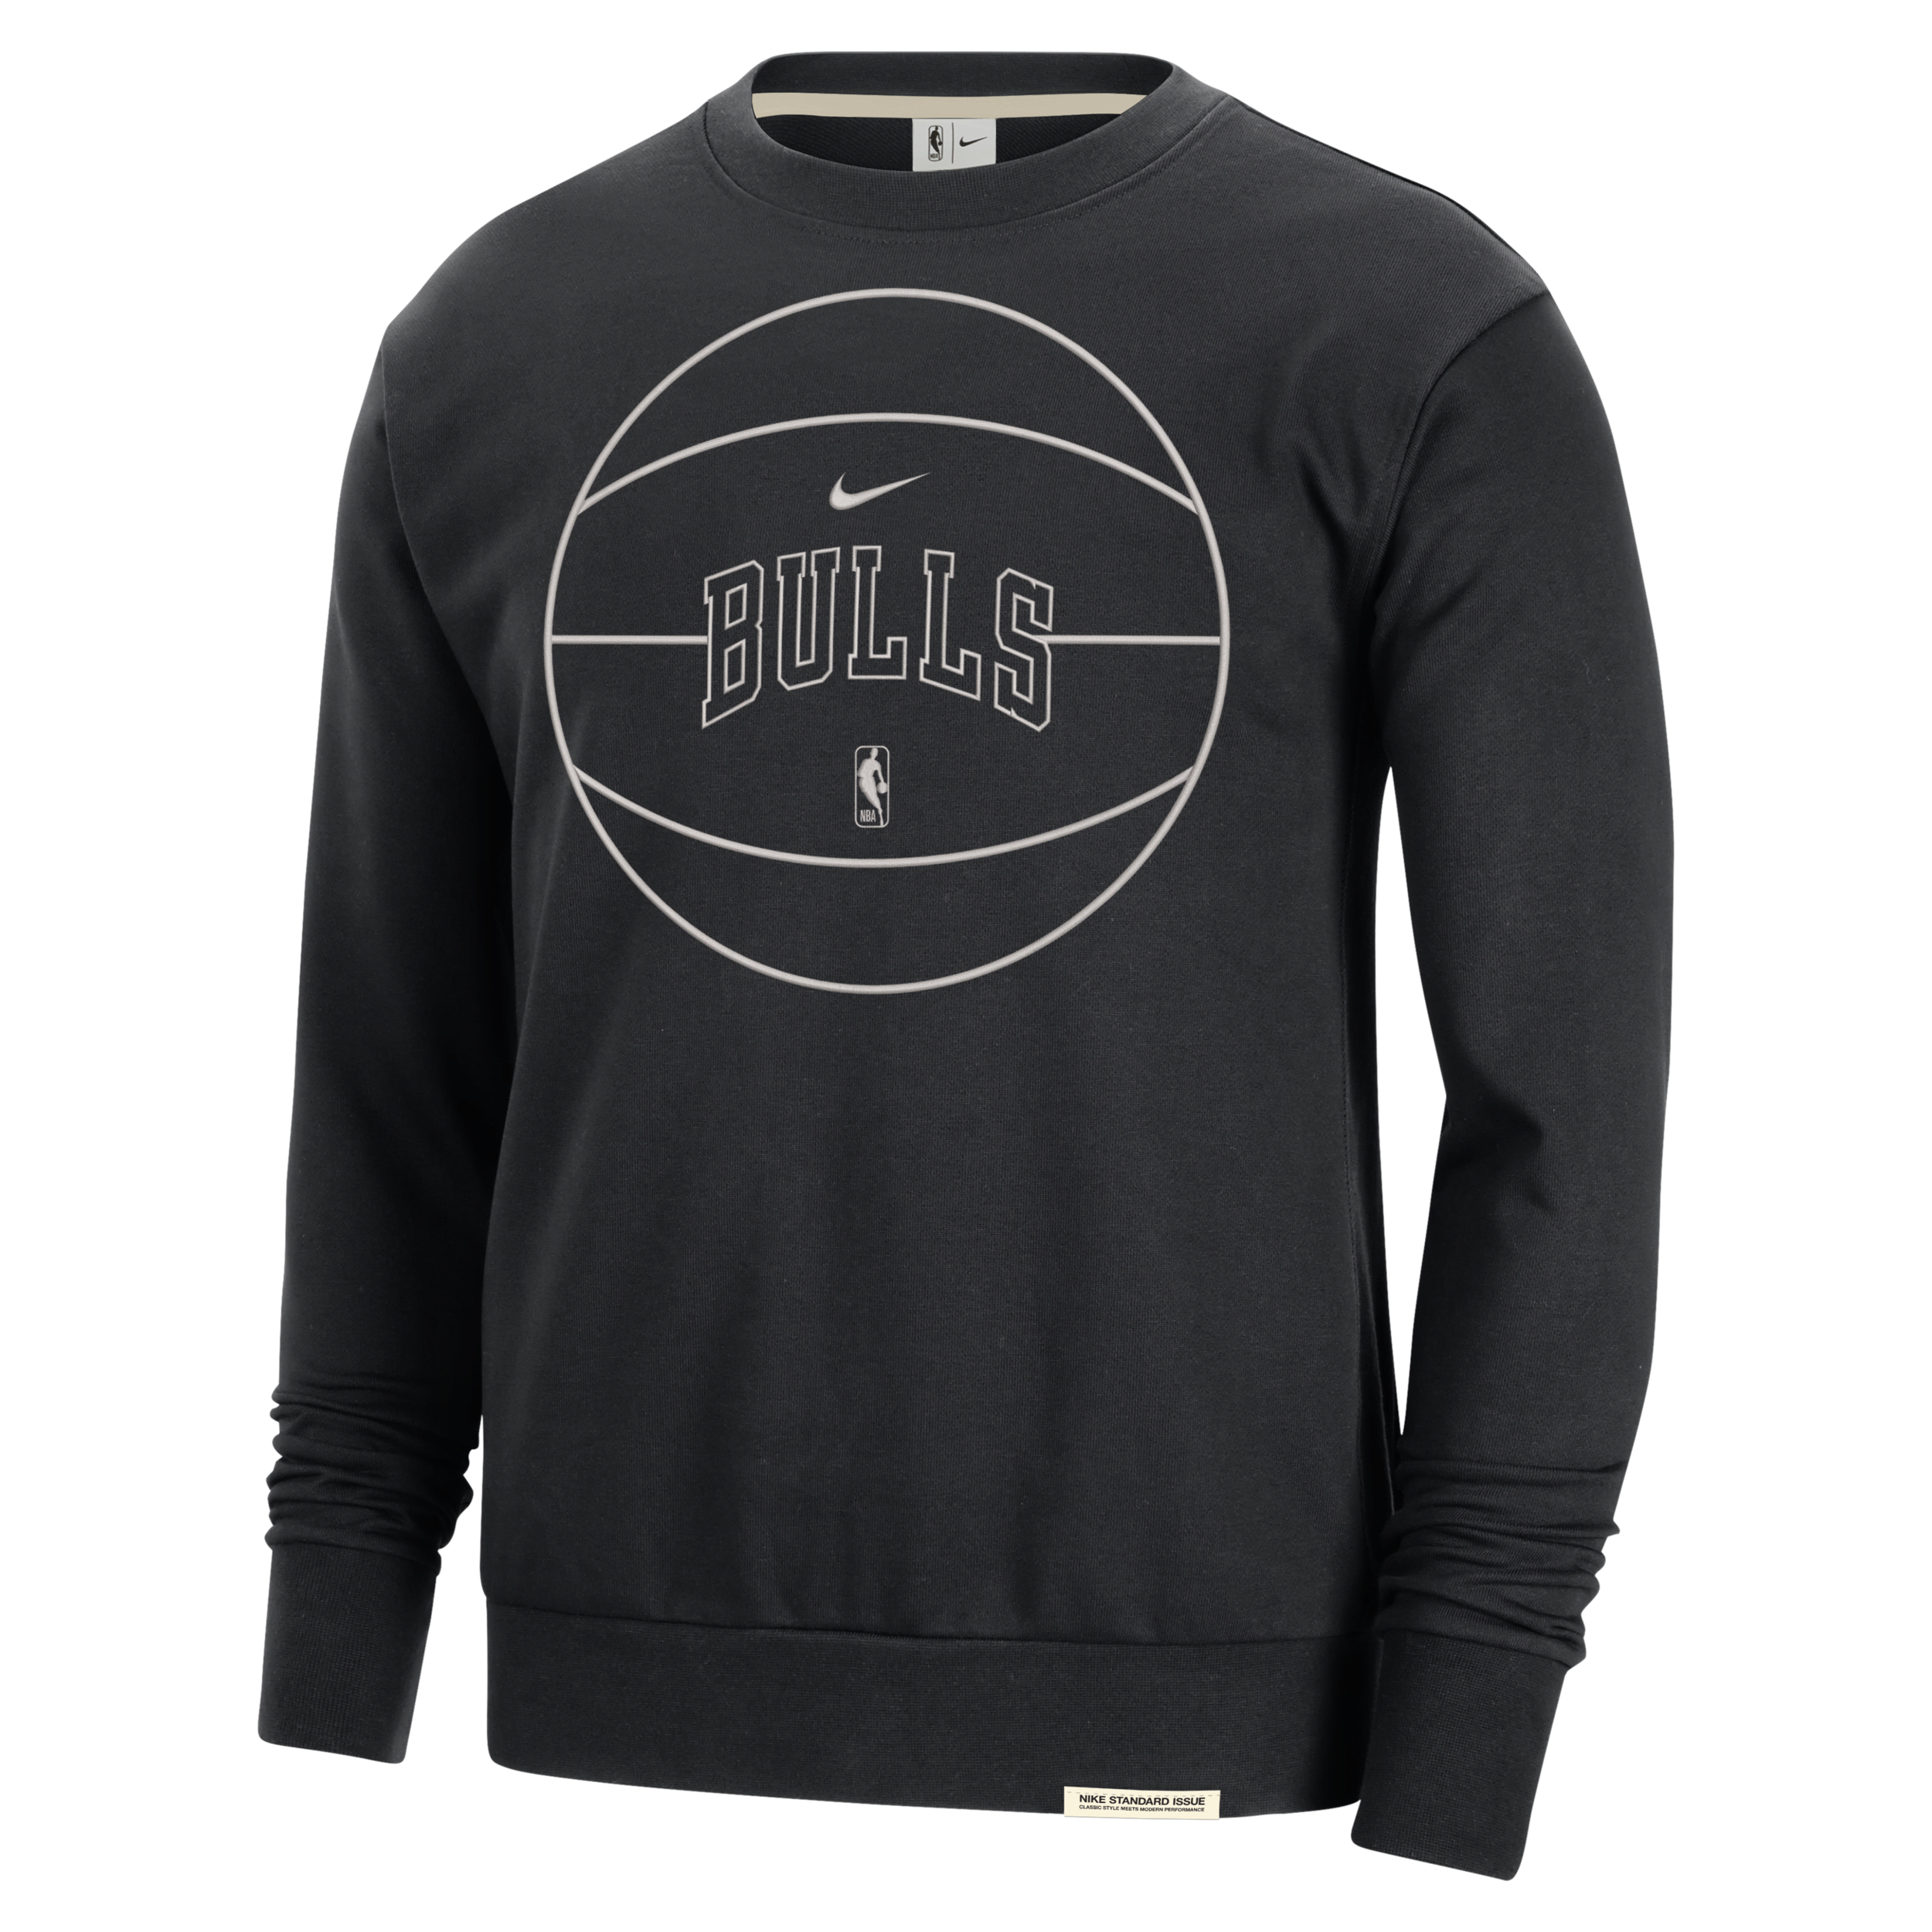 Chicago Bulls Standard Issue Nike Dri-FIT NBA-sweatshirt voor heren - Zwart